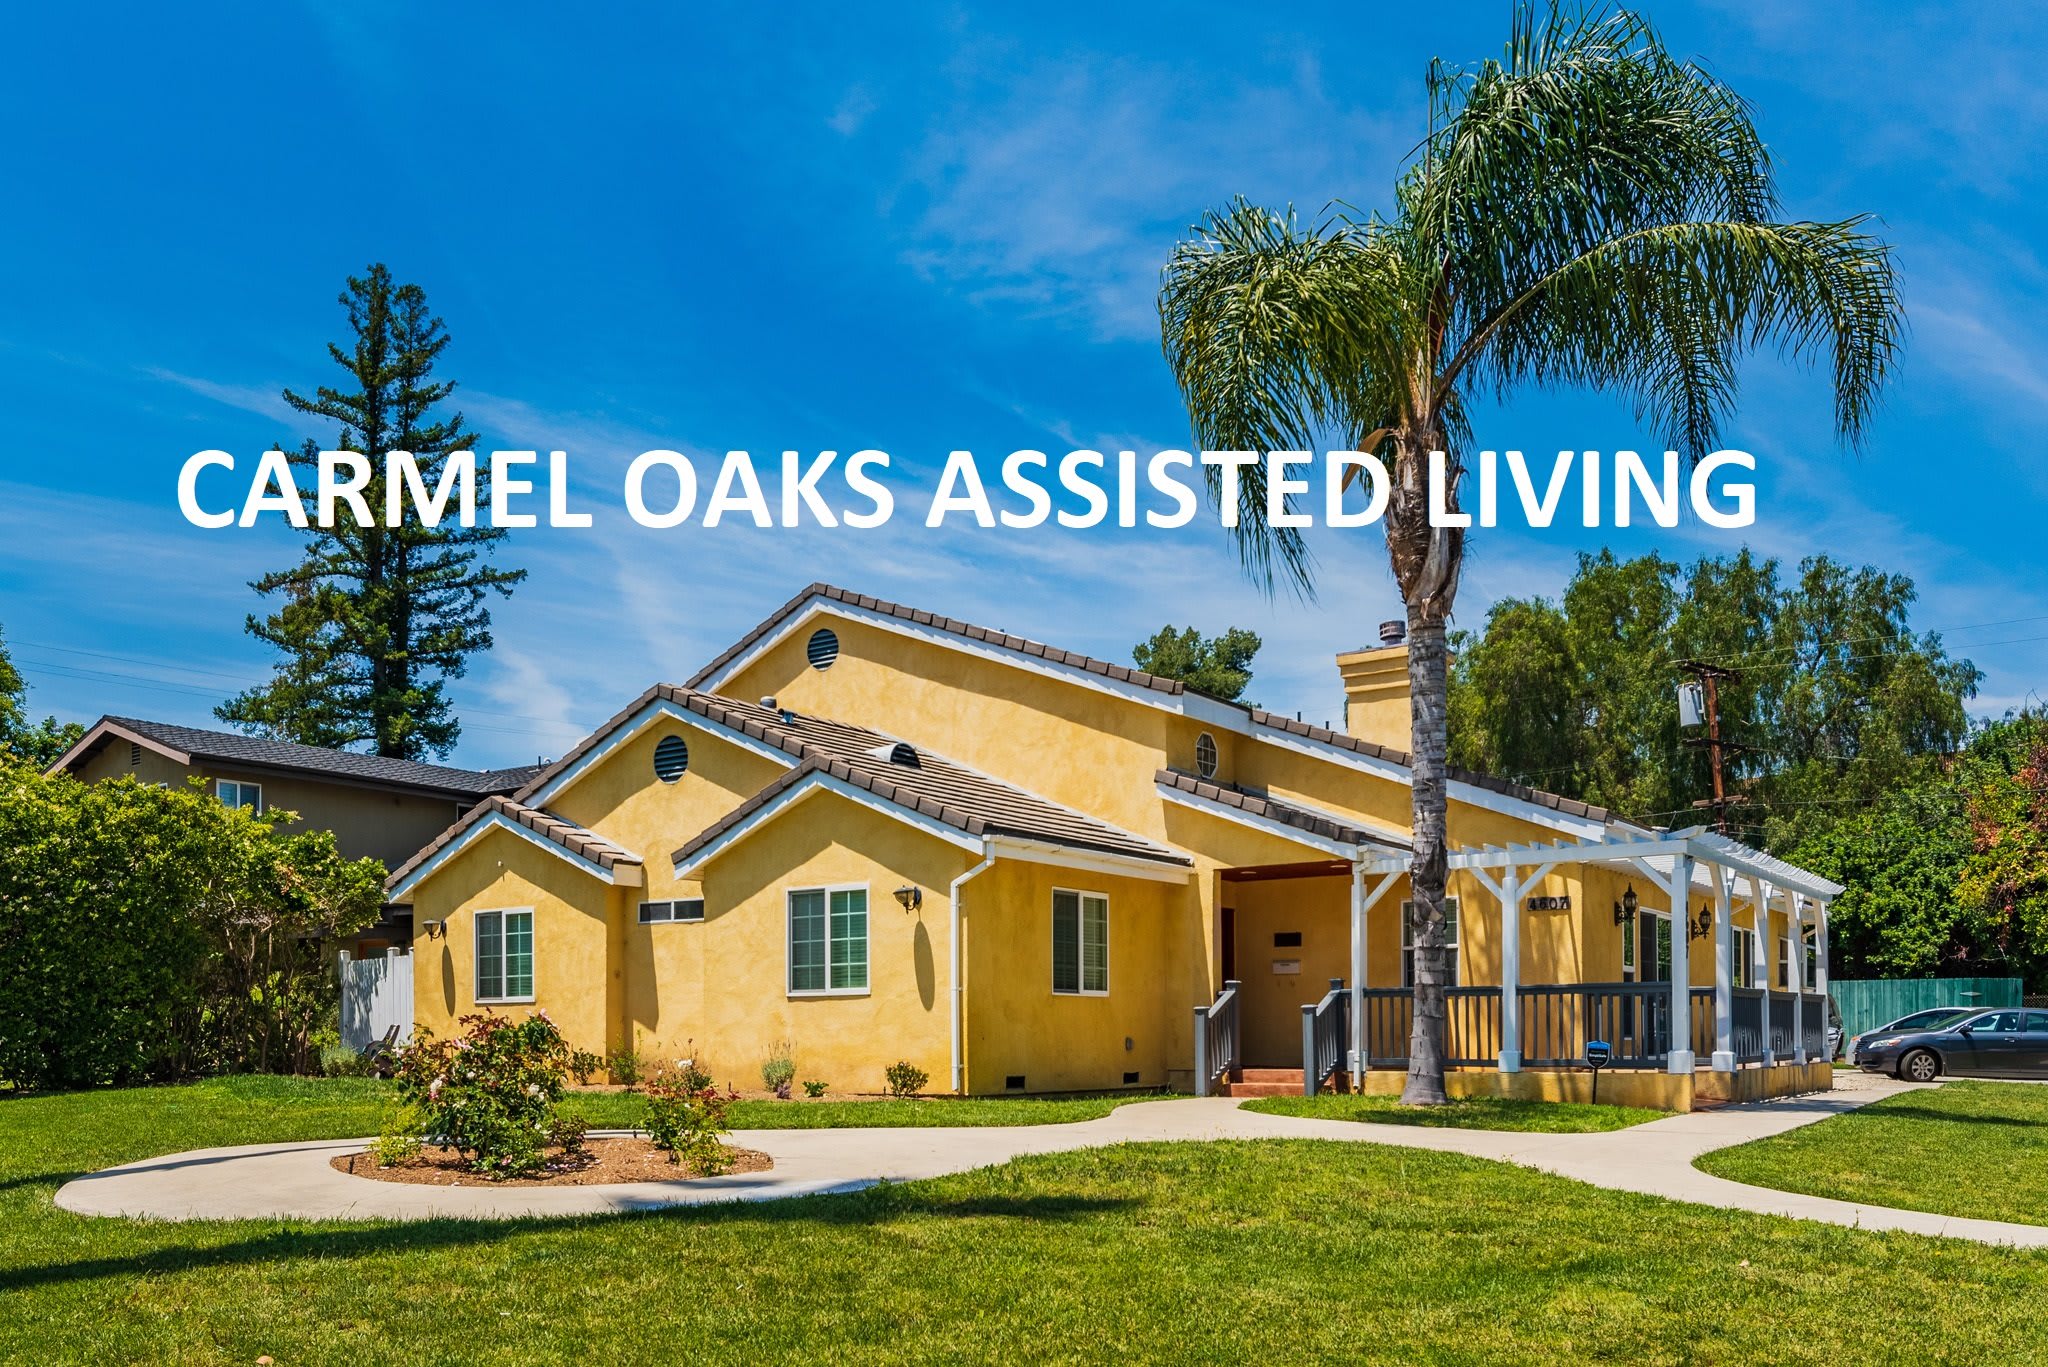 Carmel Oaks Assisted Living